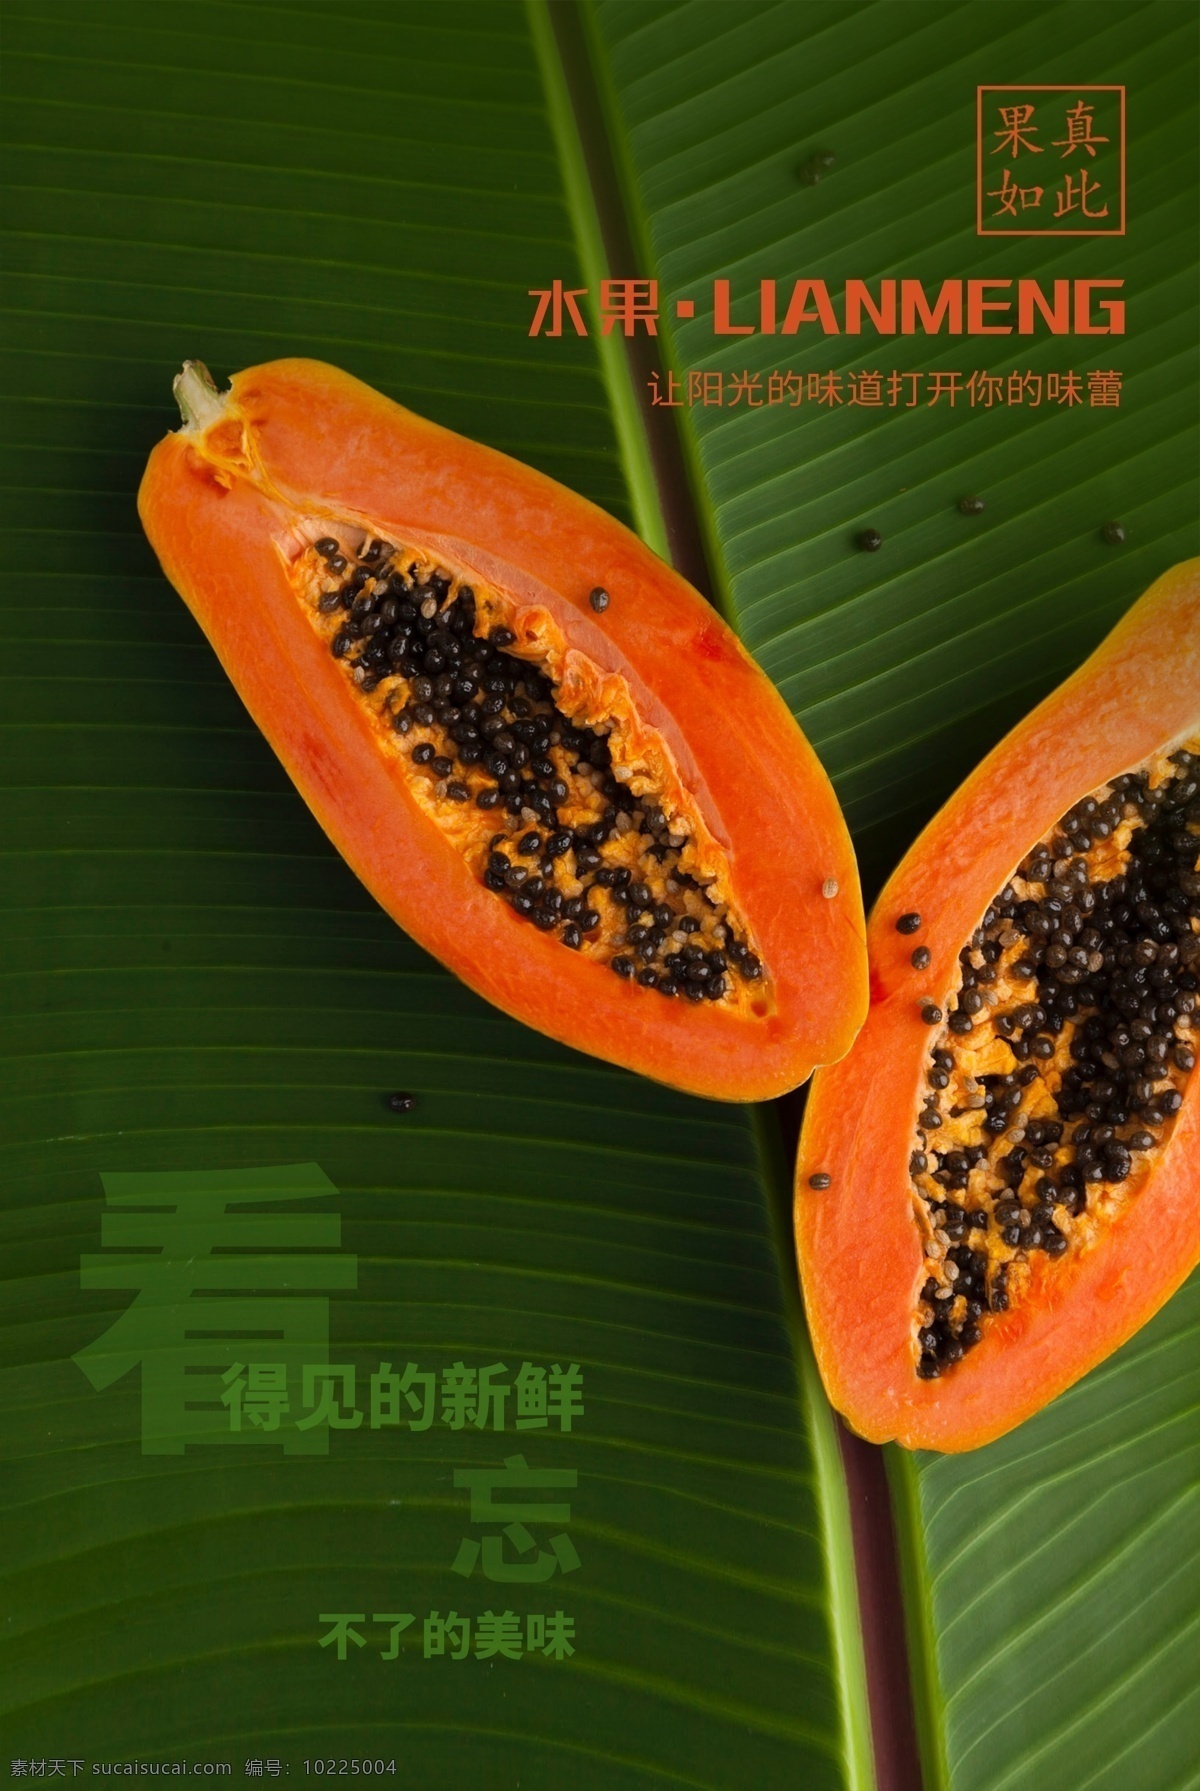 木瓜水果 木瓜 水果 促销 绿色 美味 新鲜 橙色 阳光味道 海报